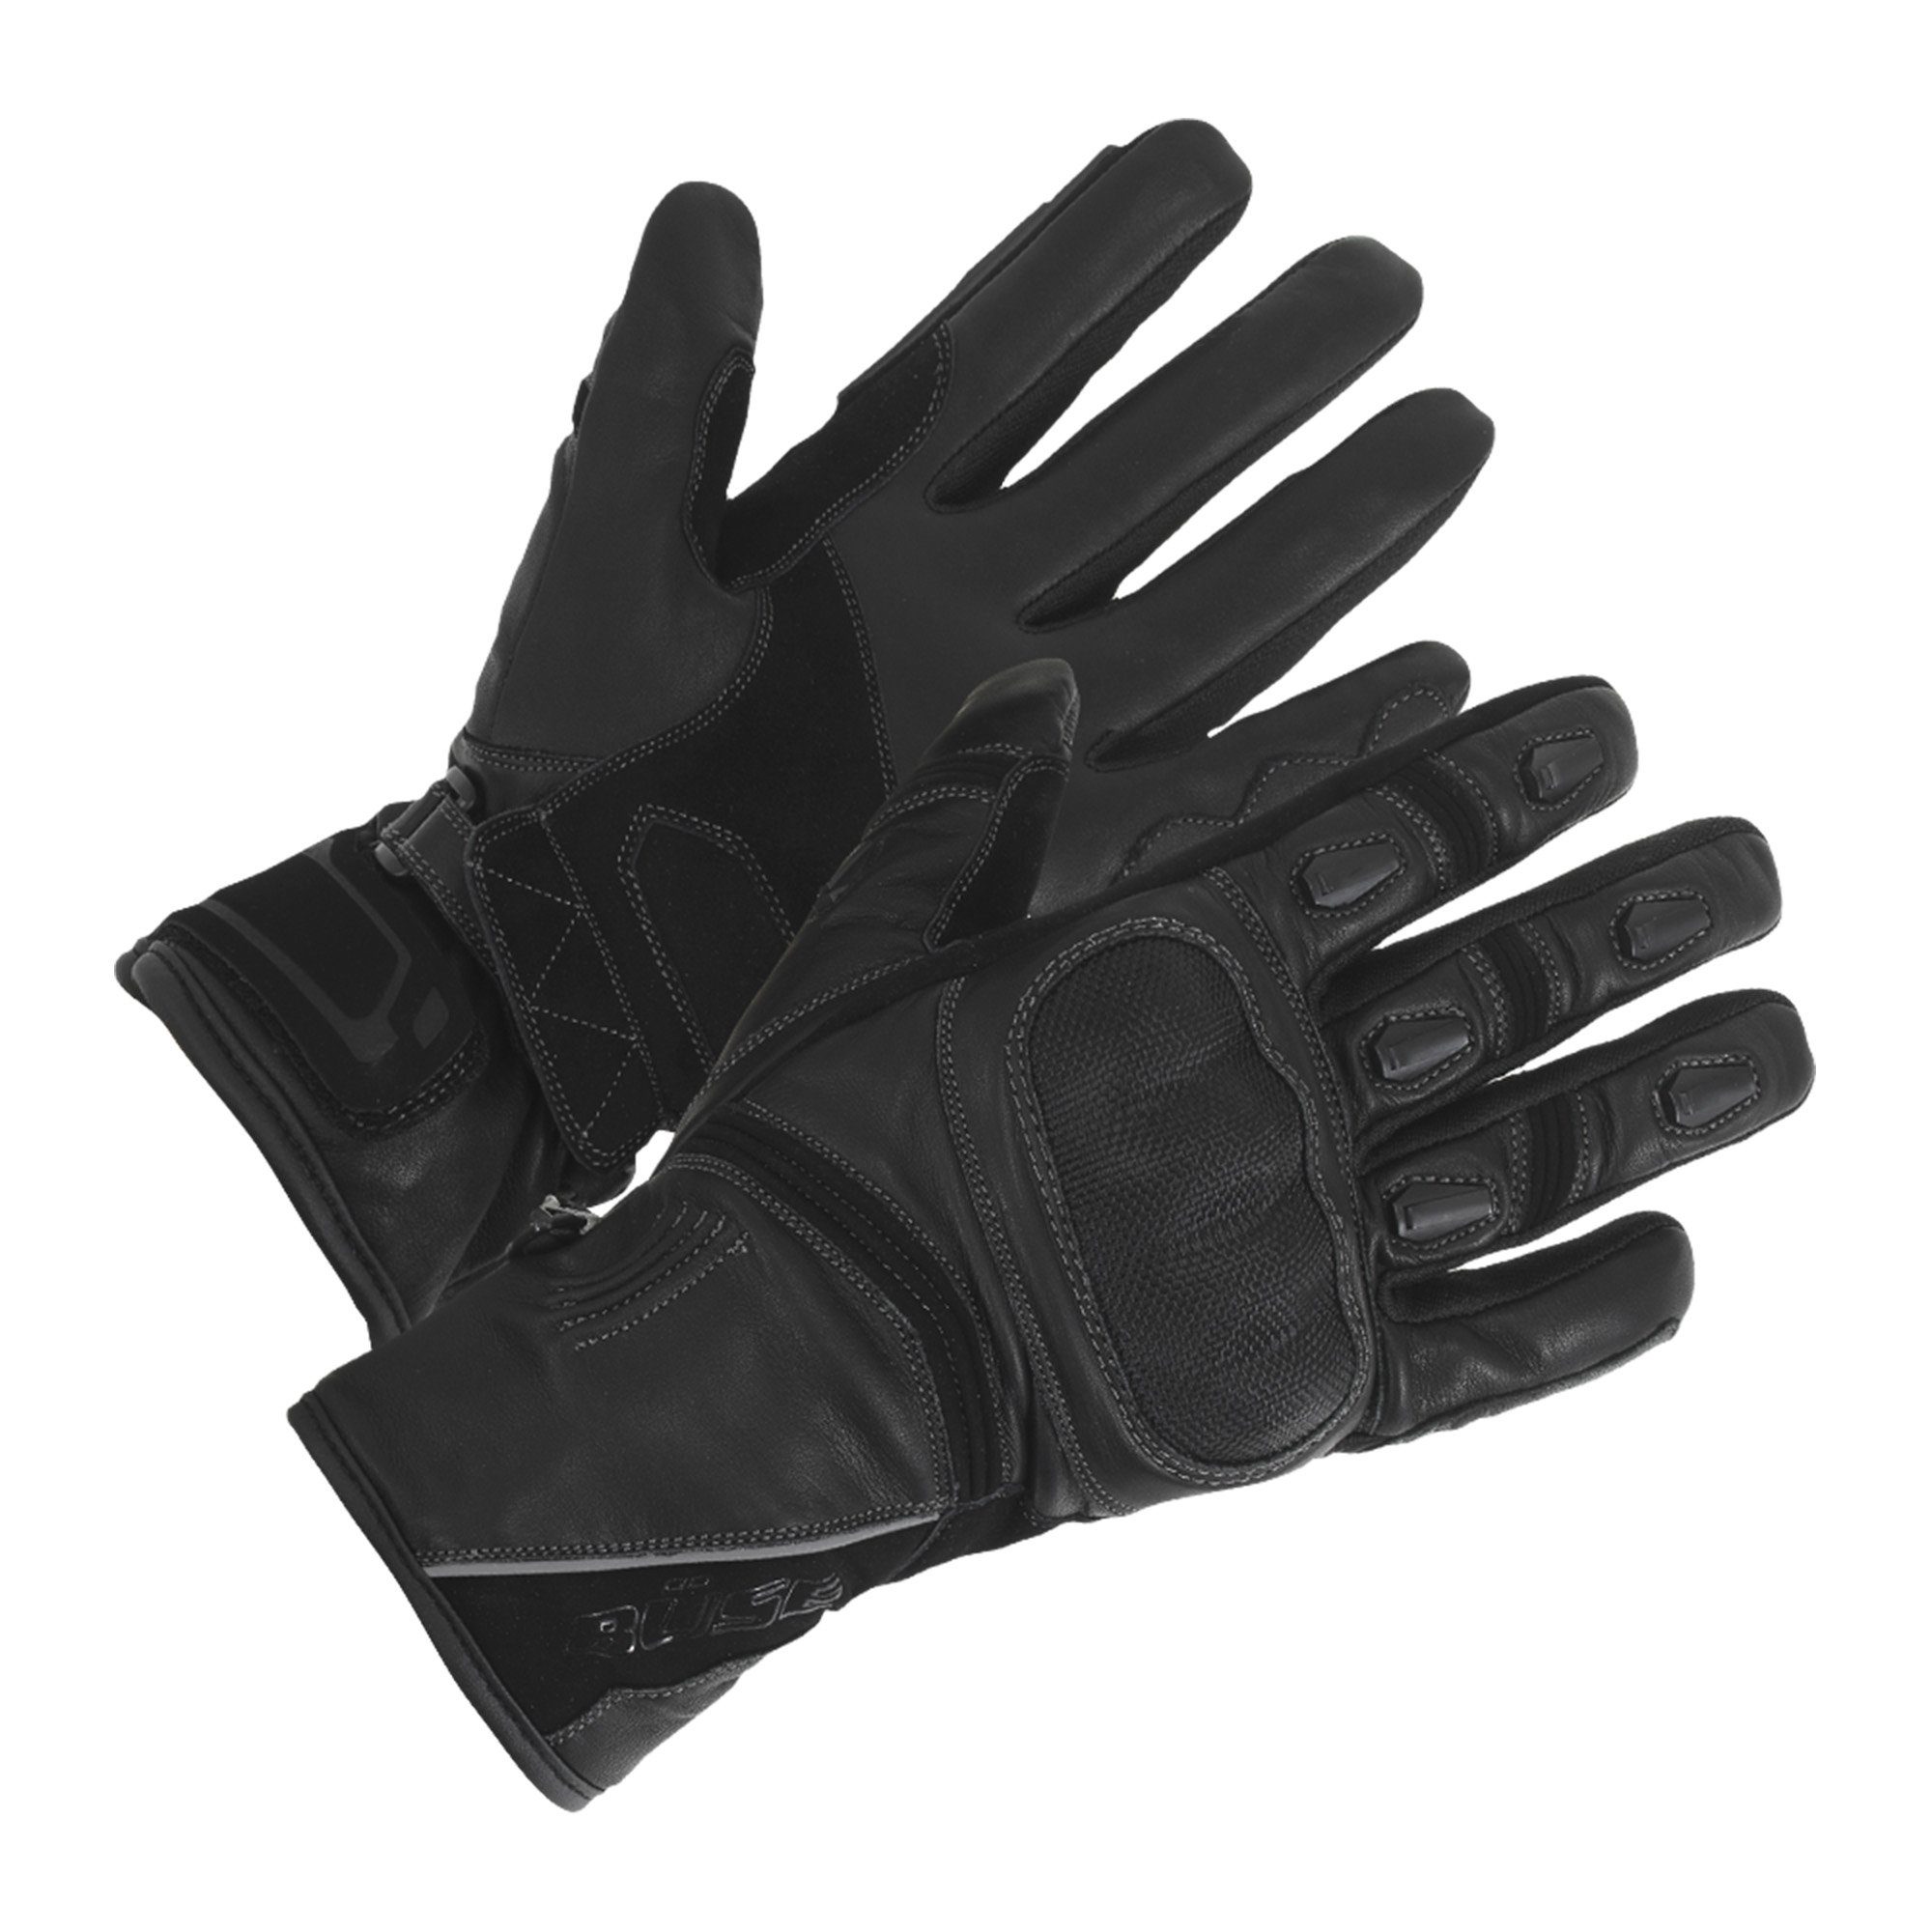 Büse Motorradhandschuhe Büse Ascari Touring Handschuh schwarz wasserdicht winddicht atmungsaktiv mit Protektoren Leder schwarz, rot